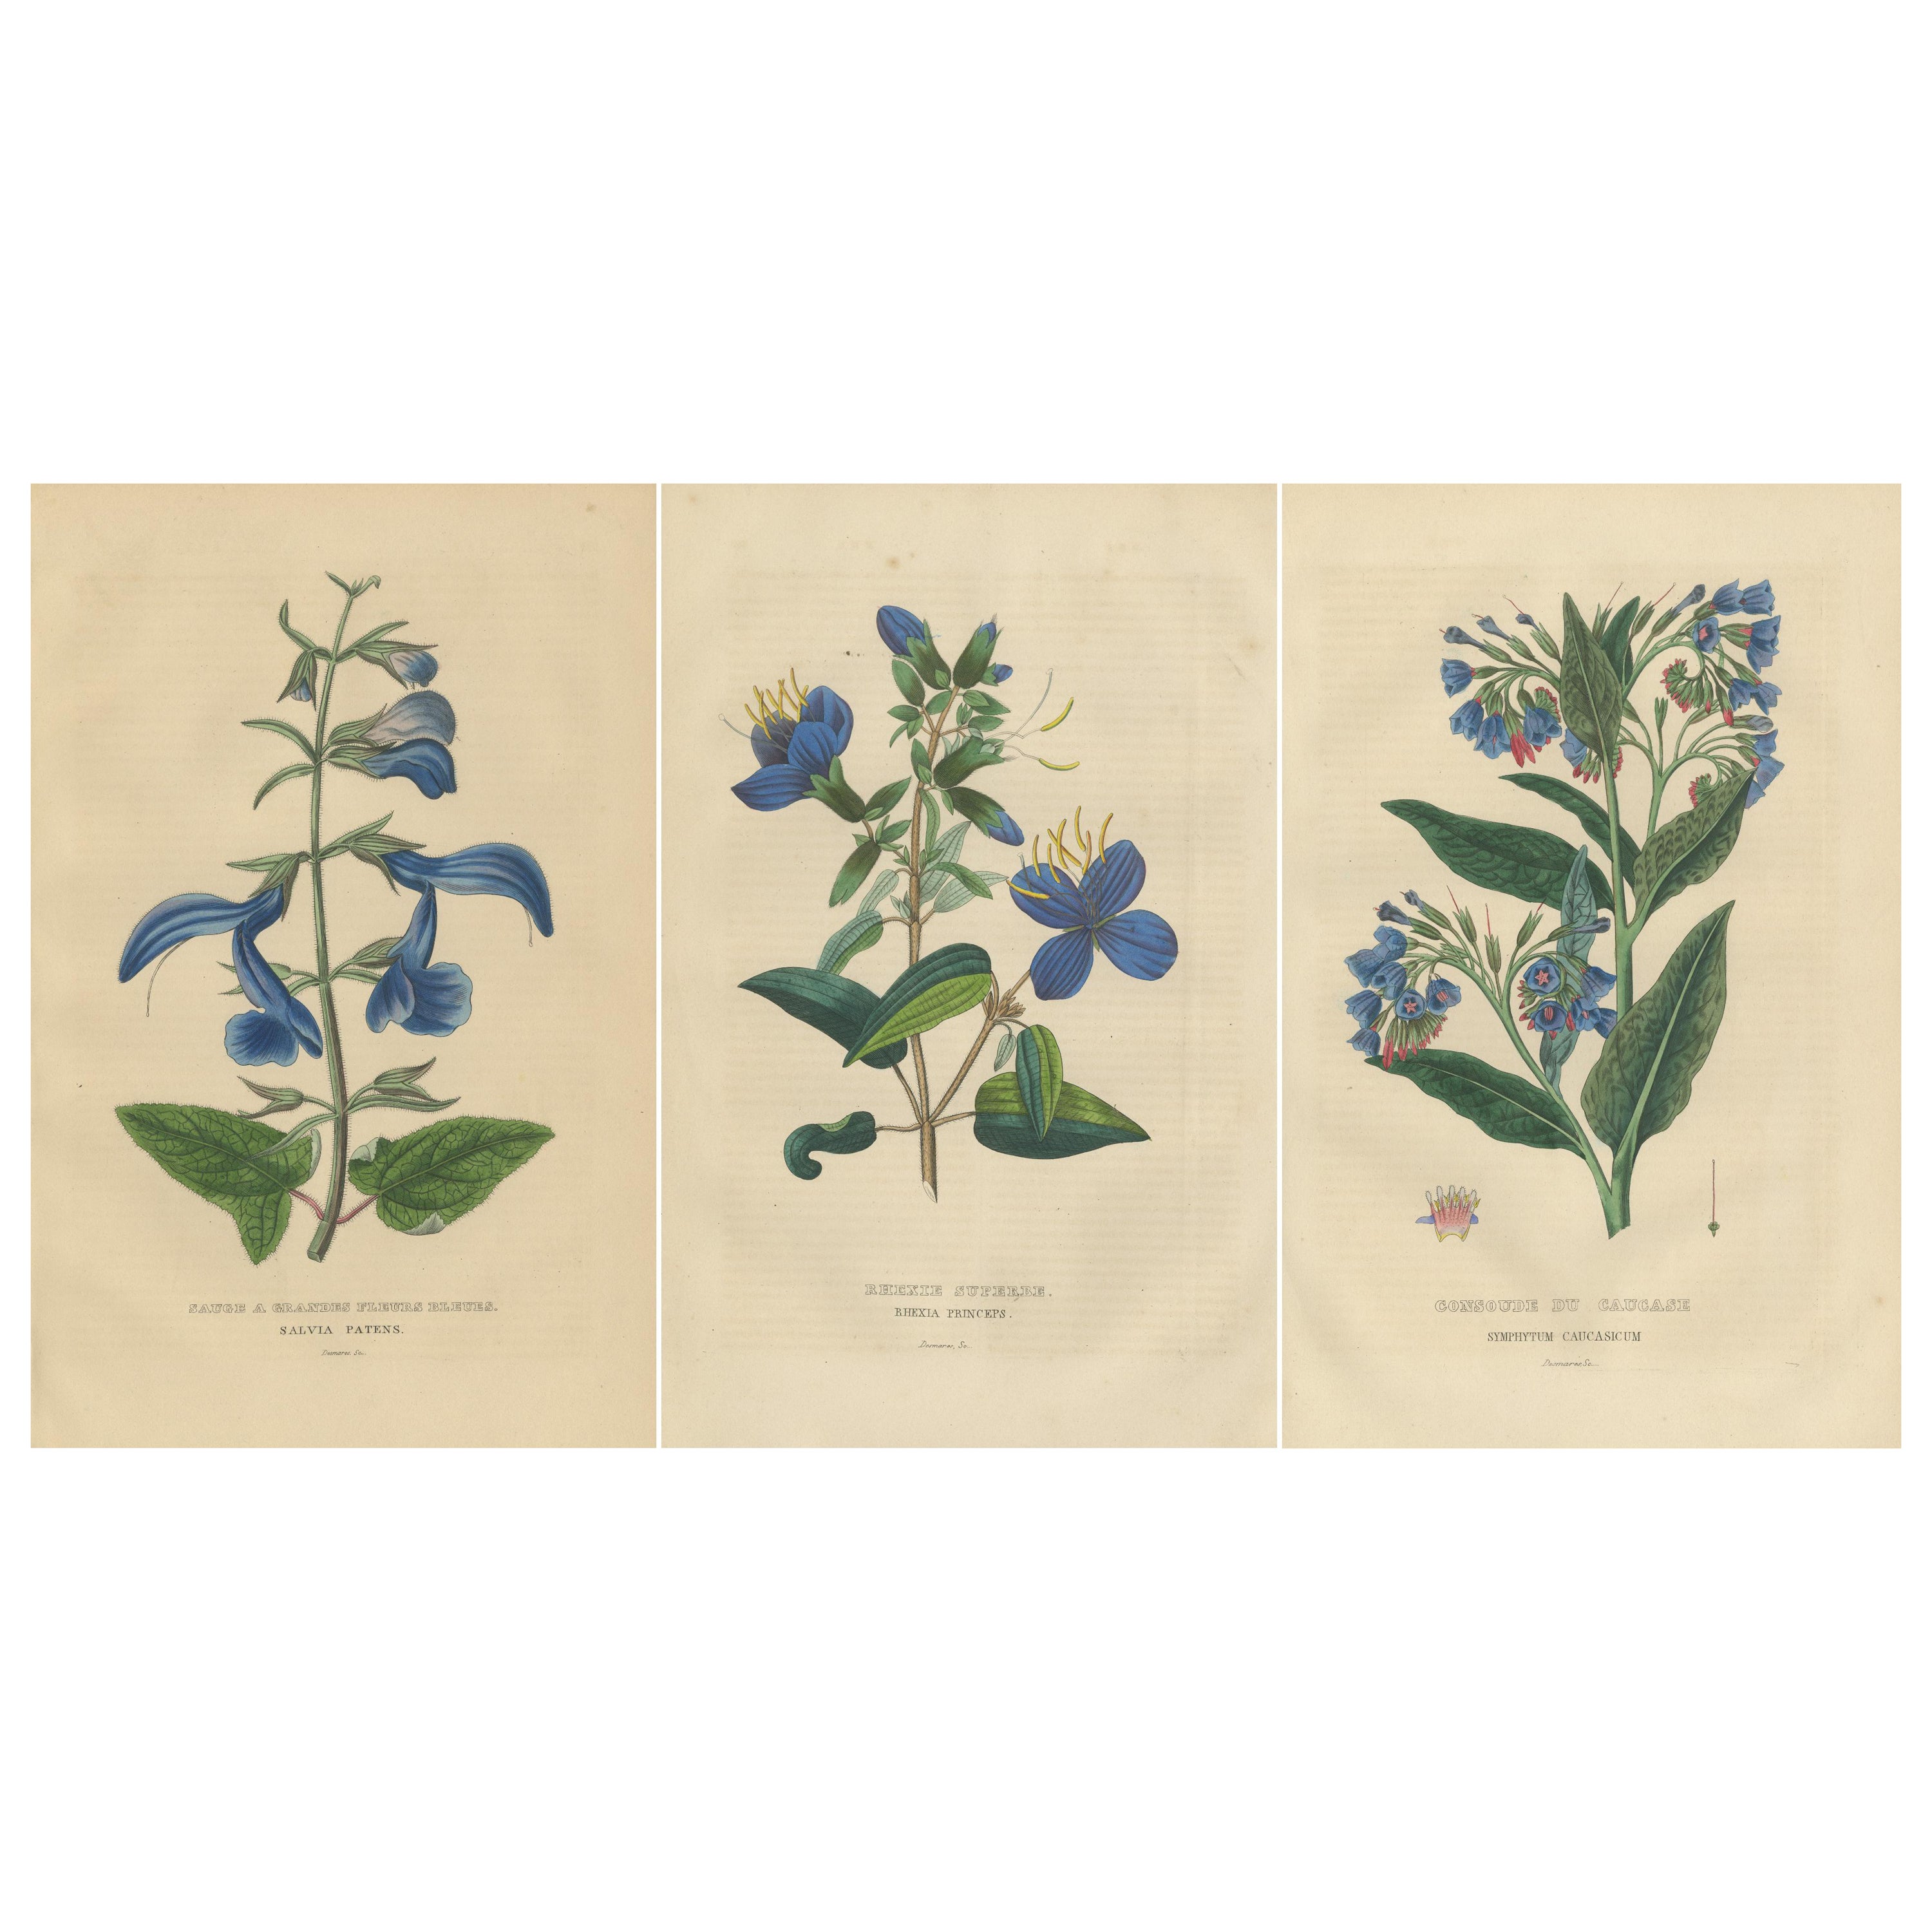 Flora's Chromatic Splendor: Handkolorierte Gravuren von 1845